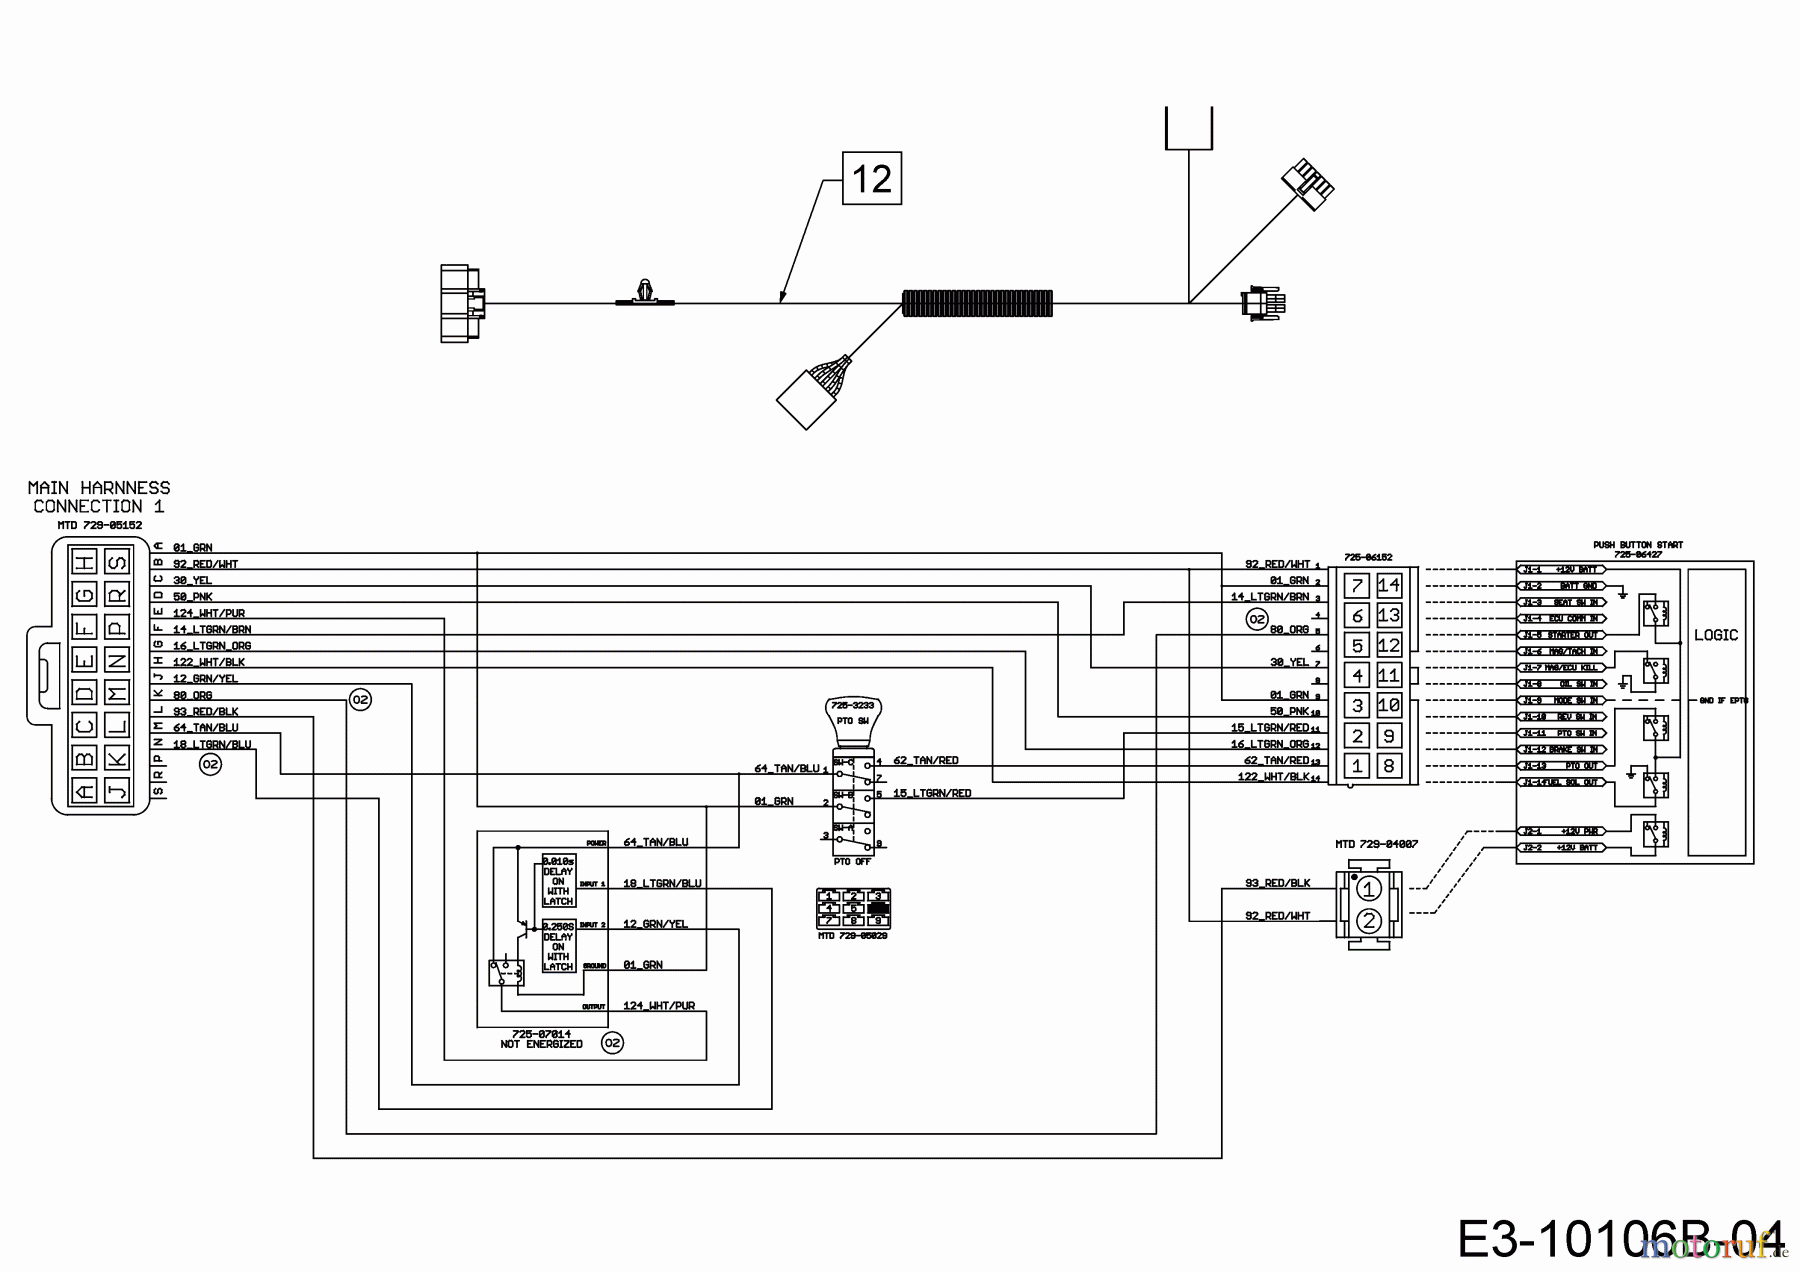  Wolf-Garten Lawn tractors 106.185 H 13CLA1VR650  (2020) Wiring diagram dashboard